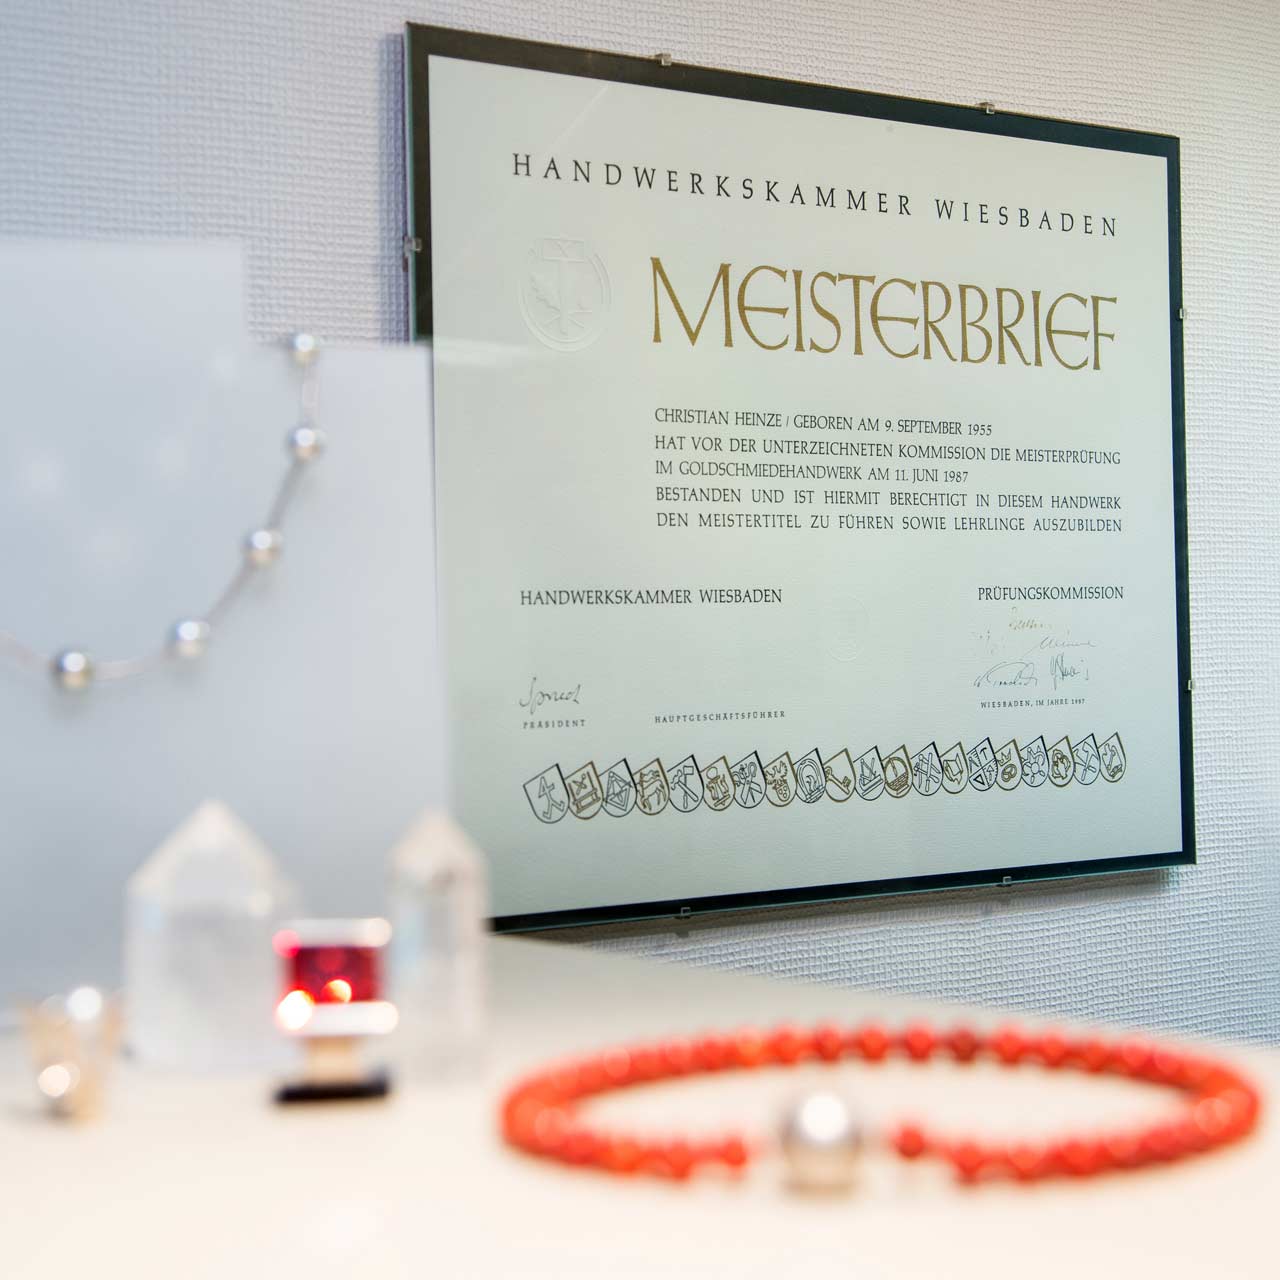 Meisterbrief von Christian Heinze, Goldschmied